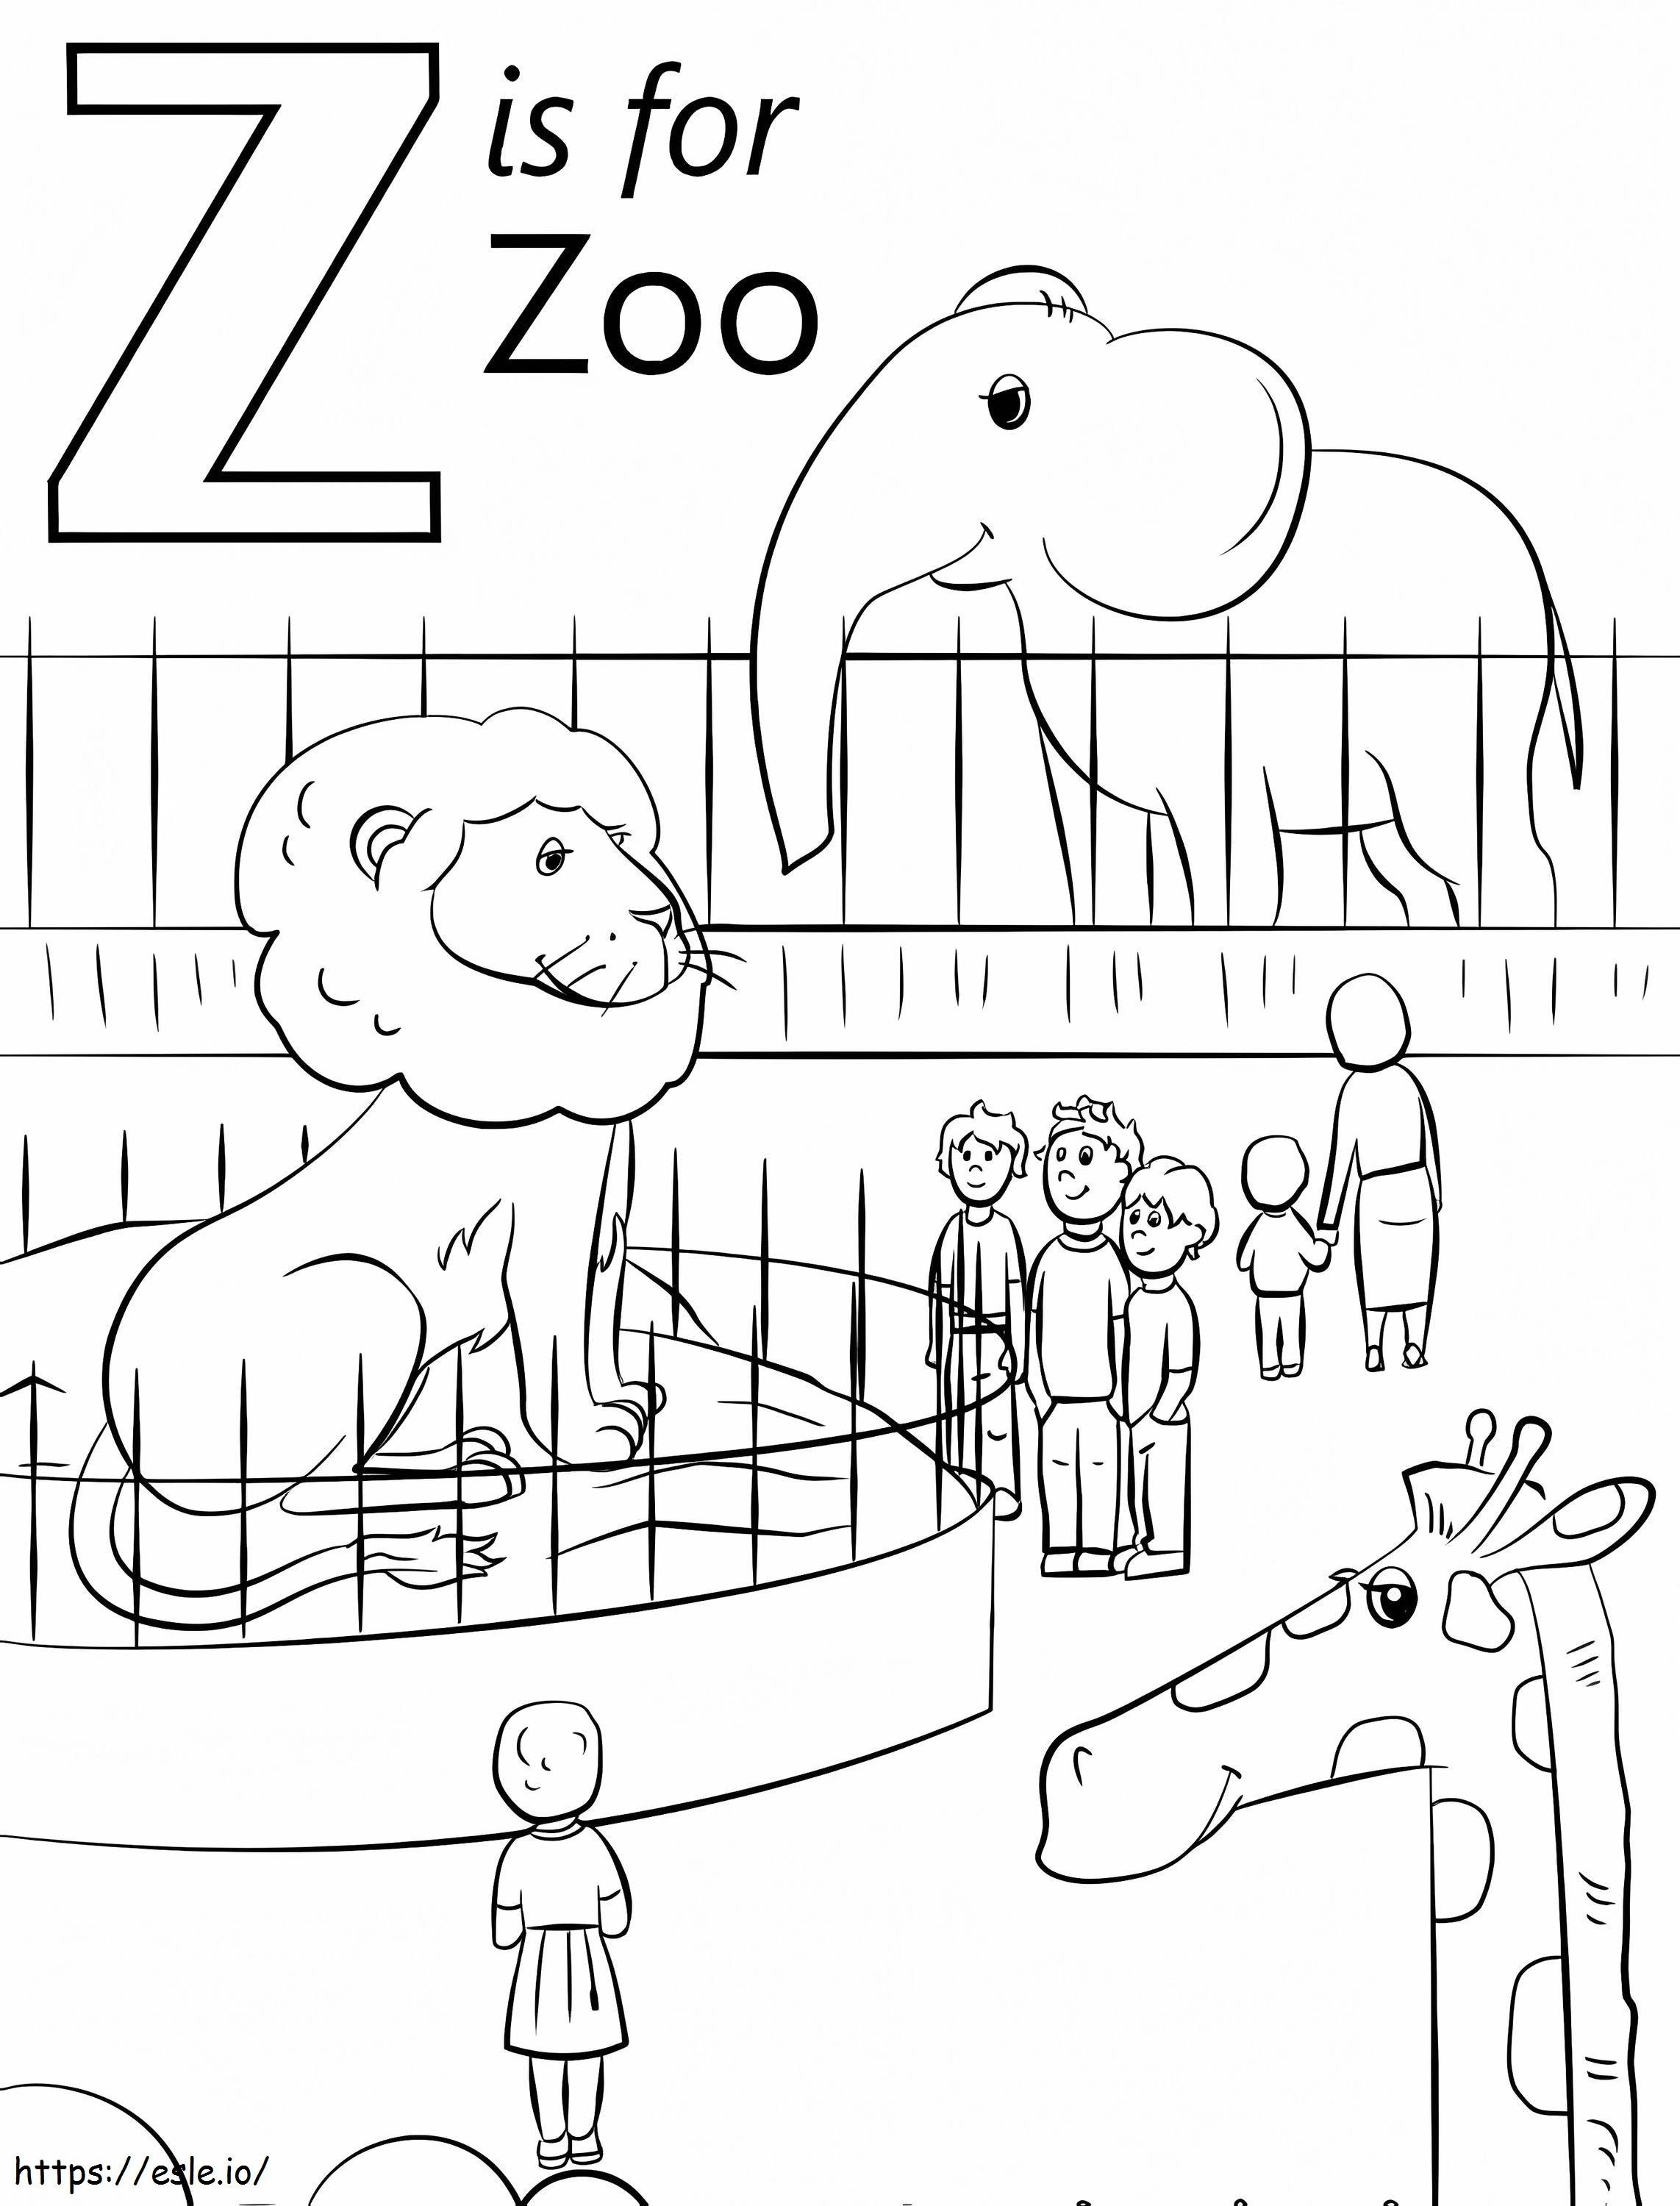 Állatkert Z betű kifestő